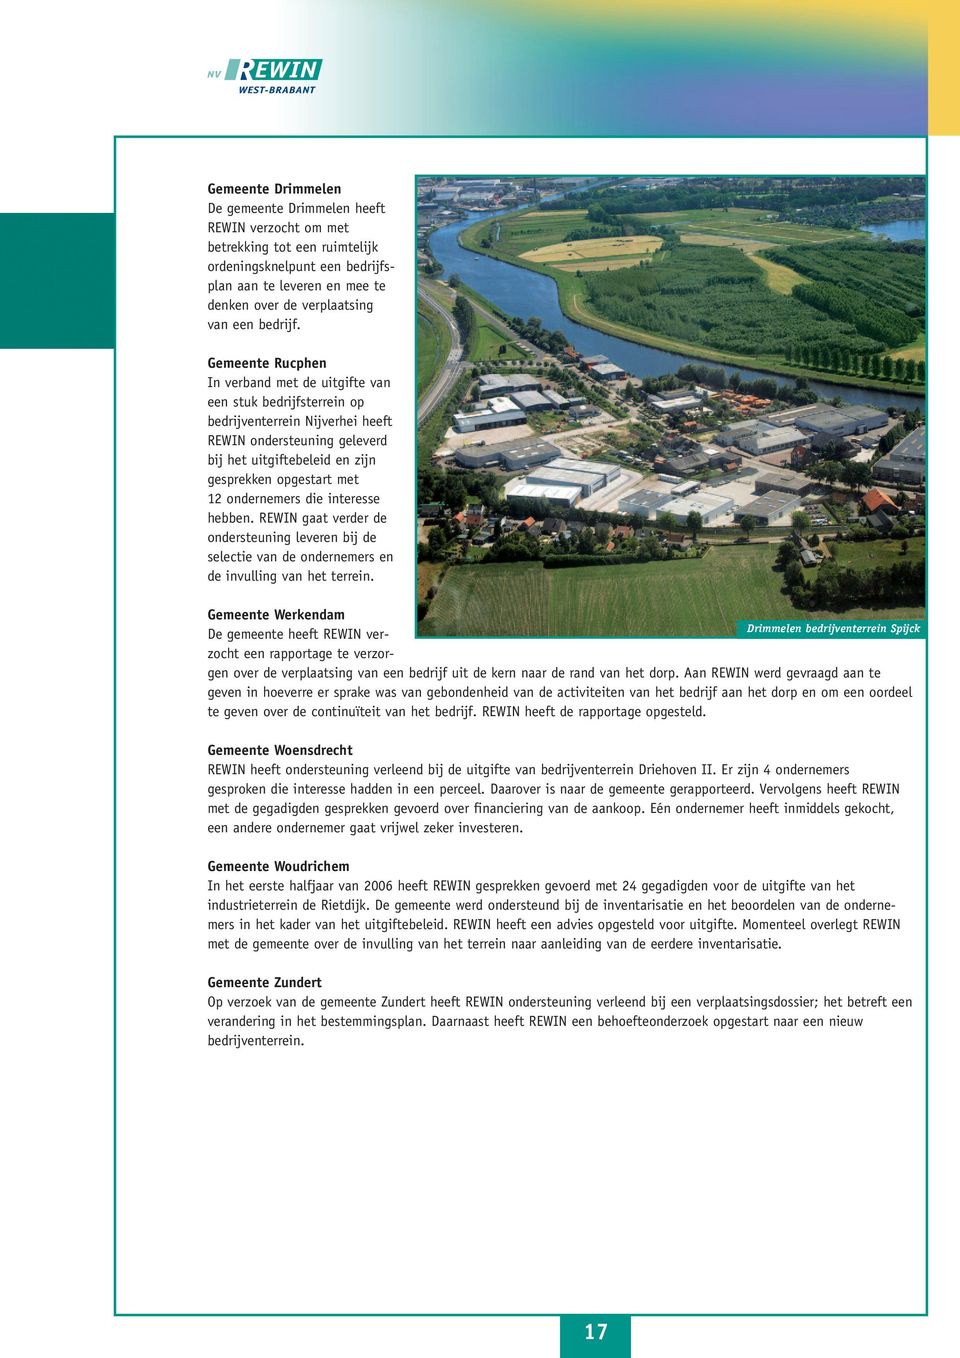 Gemeente Rucphen In verband met de uitgifte van een stuk bedrijfsterrein op bedrijventerrein Nijverhei heeft REWIN ondersteuning geleverd bij het uitgiftebeleid en zijn gesprekken opgestart met 12